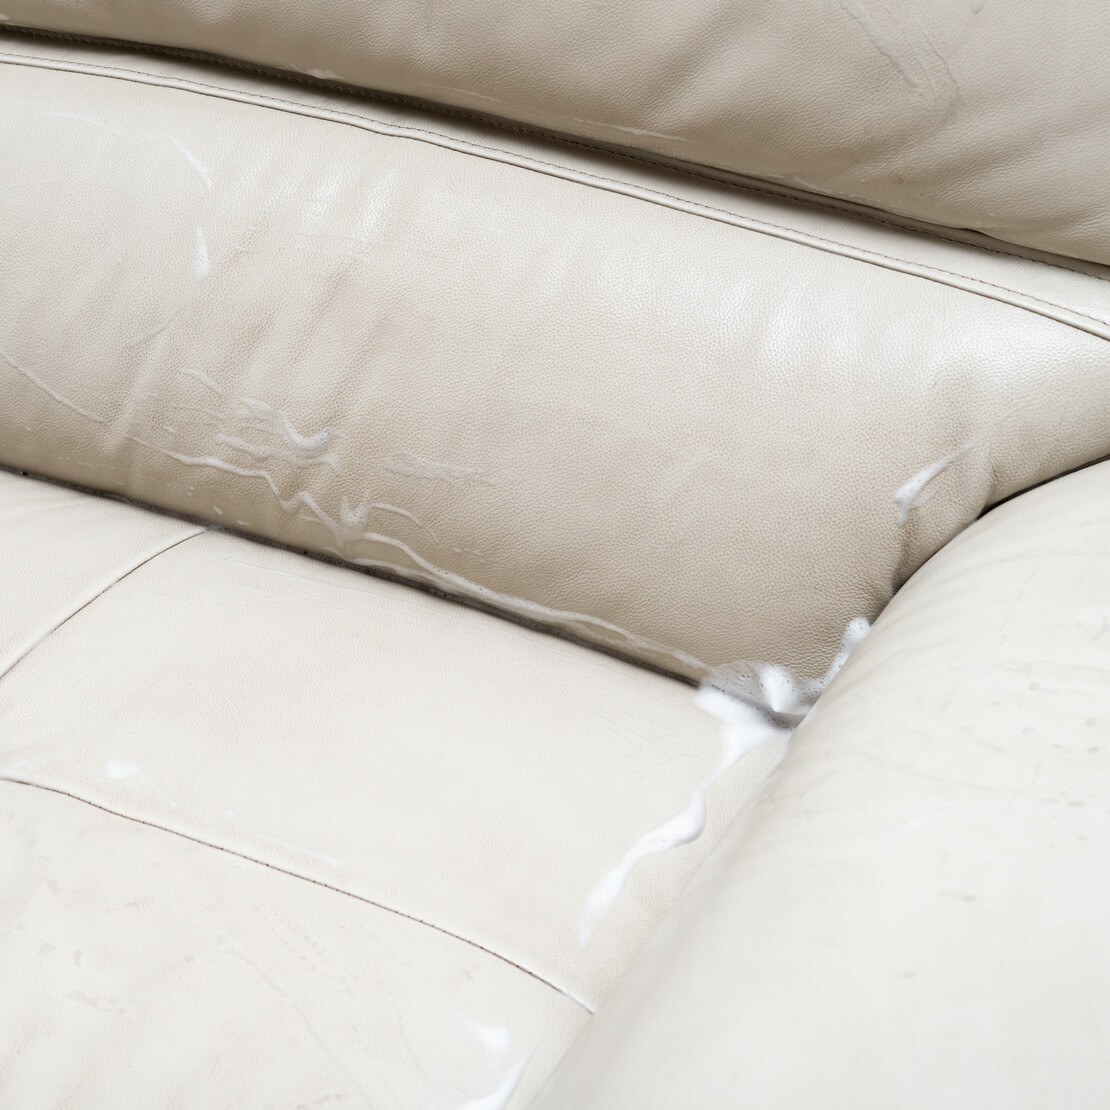 Comment nettoyer un canapé en cuir beige ?